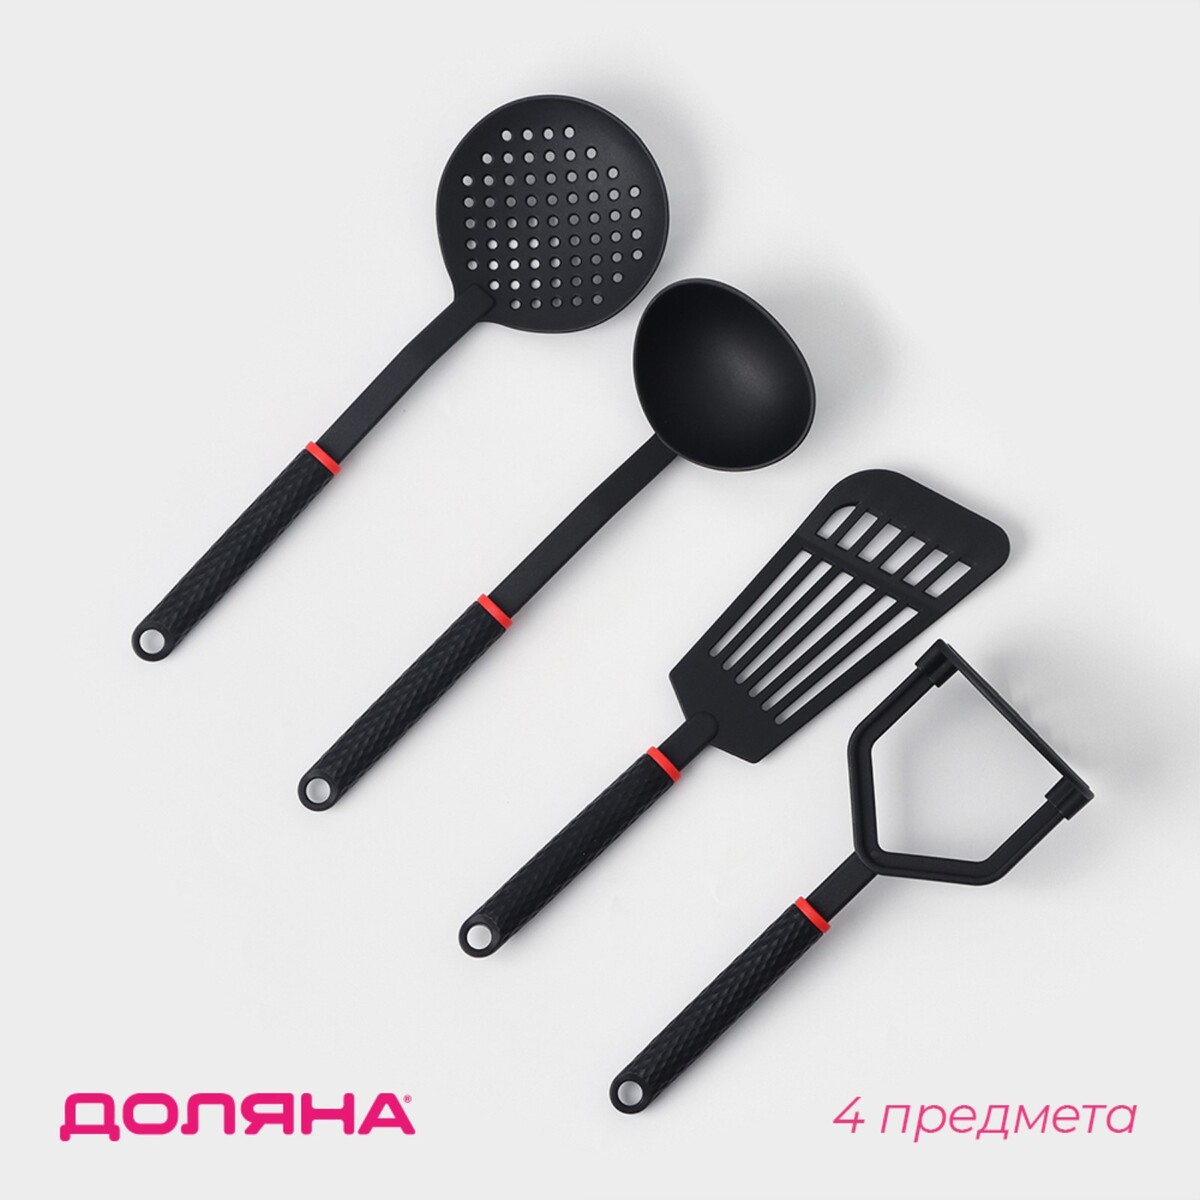 Набор кухонных принадлежностей picanto, 4 предмета, цвет черный